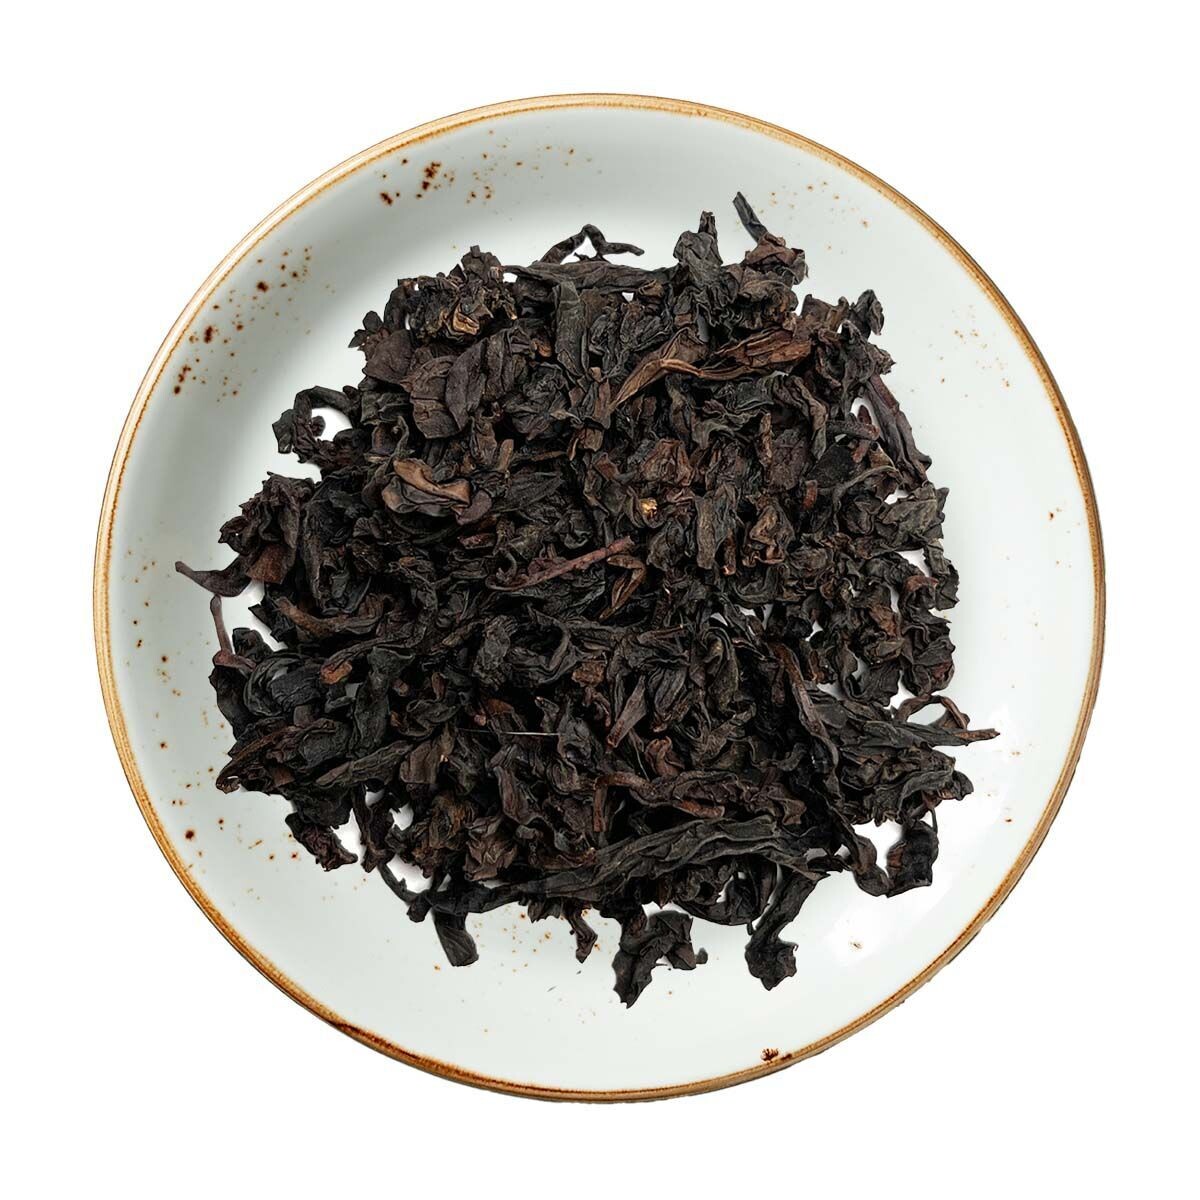 1997 Lao Tie Guan Yin Oolong Tea, Size: One Ounce (28 grams)